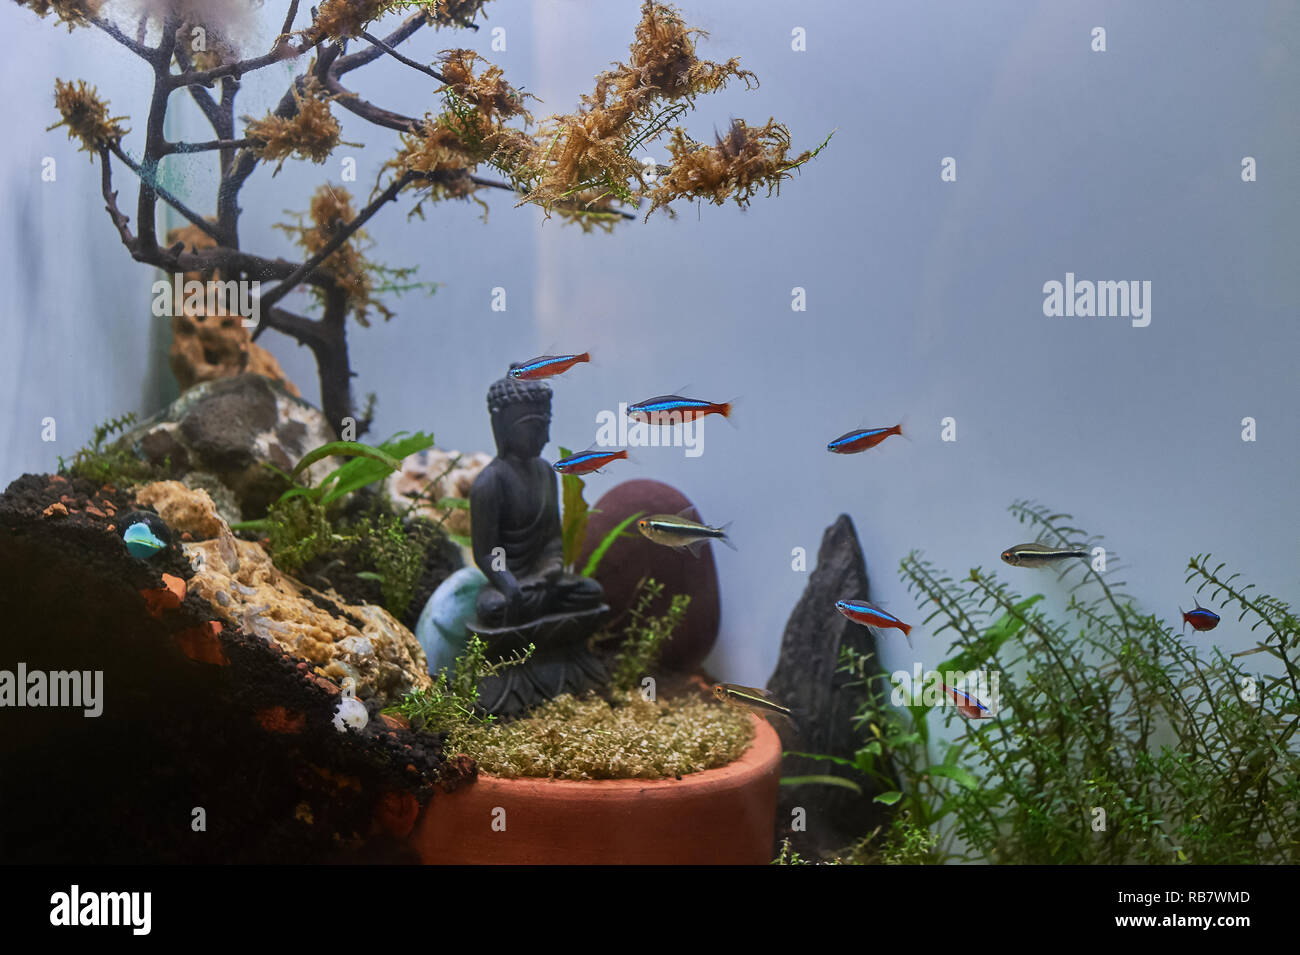 21-Apr-2018 - Tropische bunte Fische schwimmen im Aquarium mit Pflanzen und  Buddha Stein Statue Kandivali Mumbai Maharashtra Indien Asien  Stockfotografie - Alamy